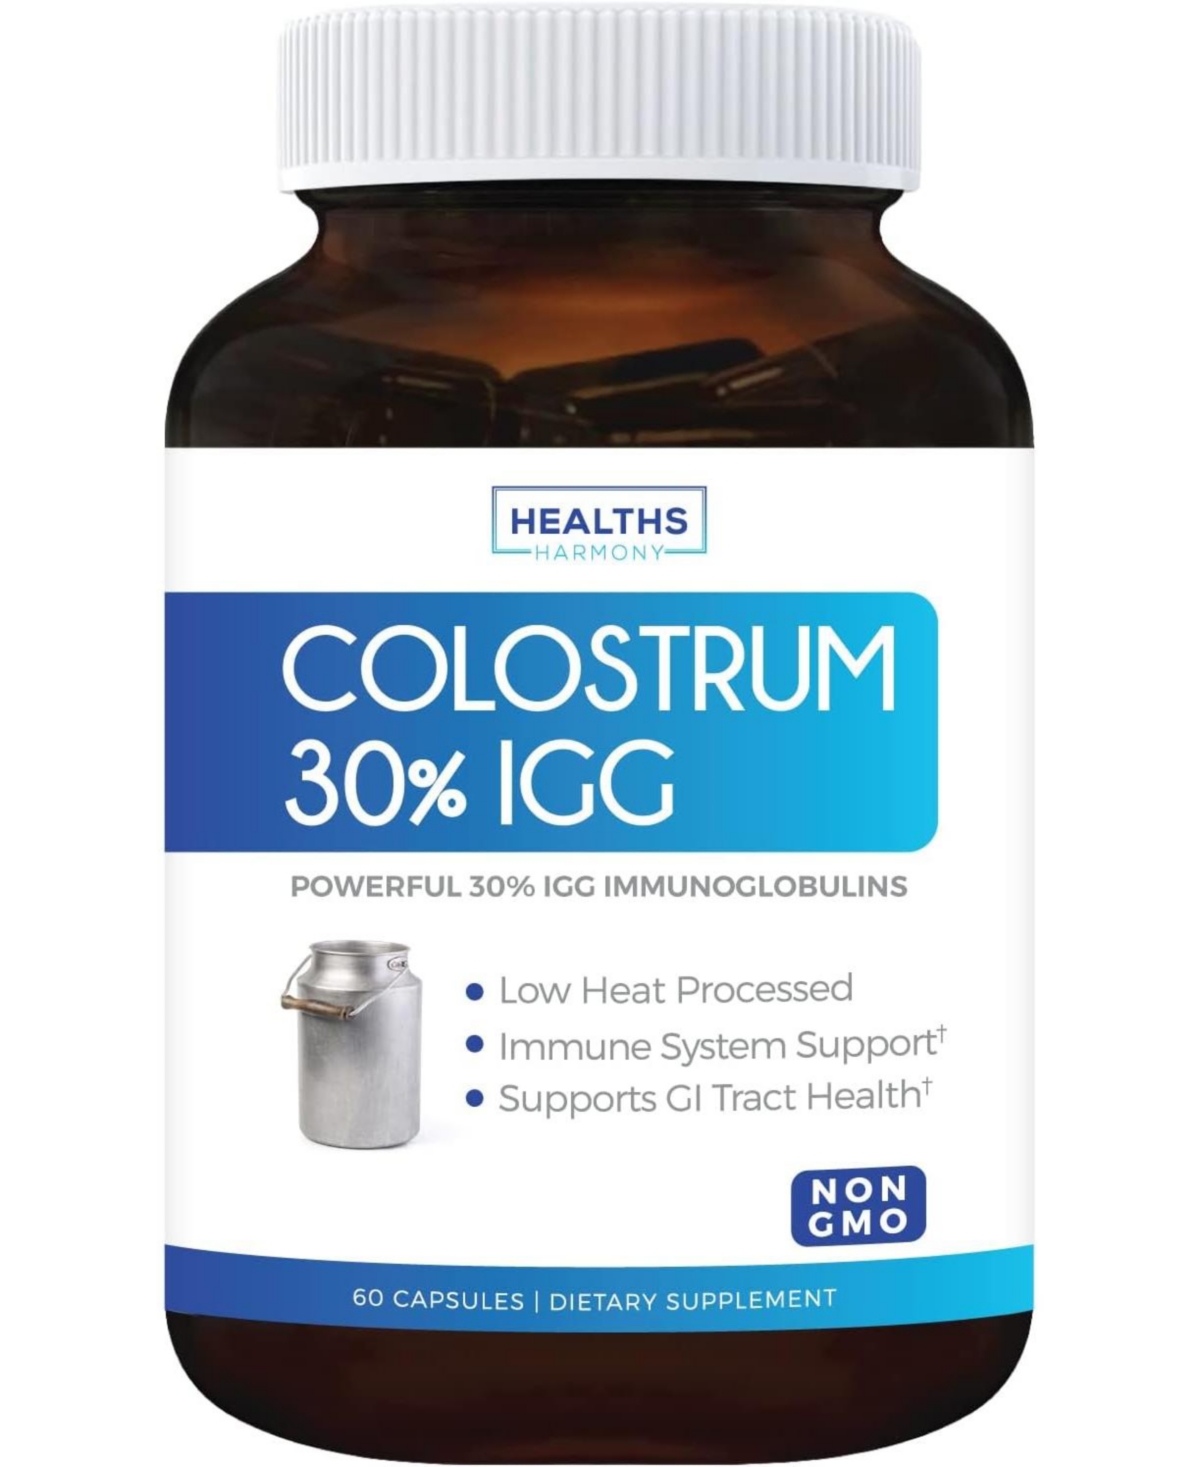 Colostrum 1,000mg non-gmo 30% IgG Immunoglobulins - Immune System Support, Gut Health & Respiratory Health Supplement - Low Heat Proce